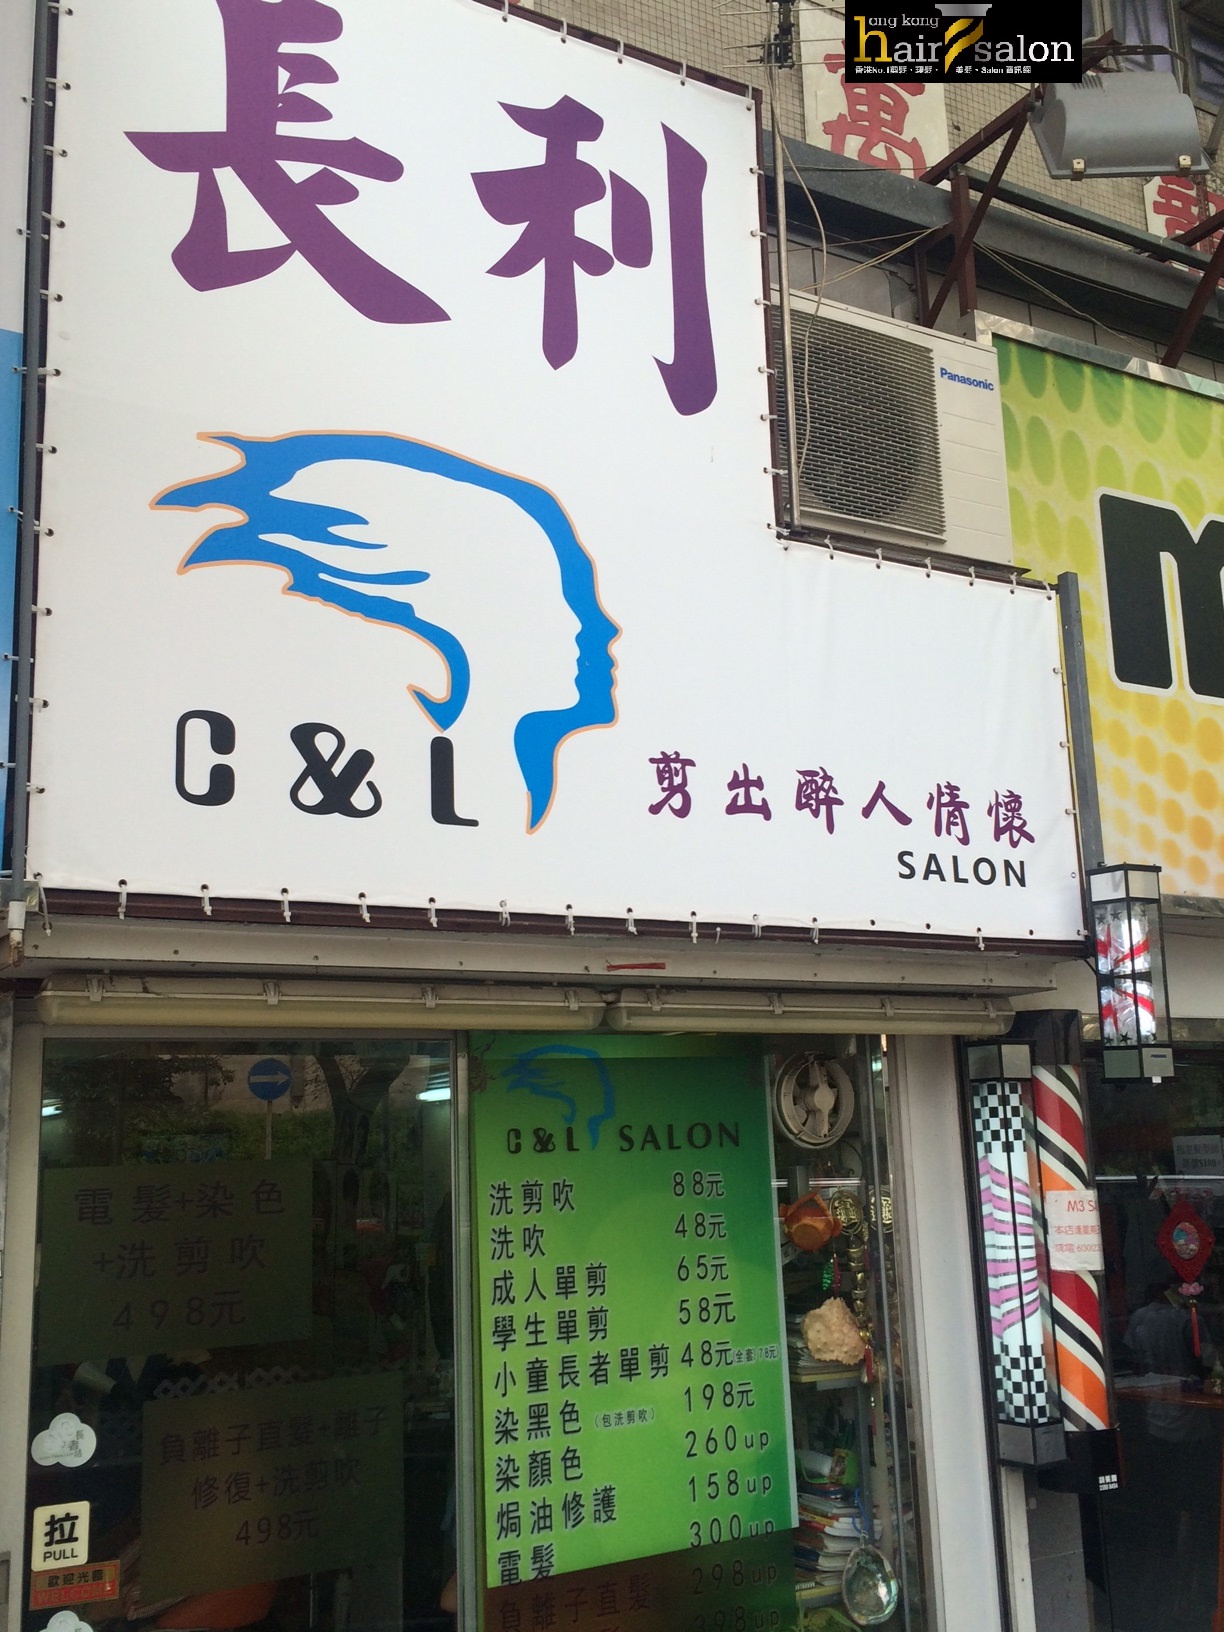 髮型屋: 長利 G & L Salon